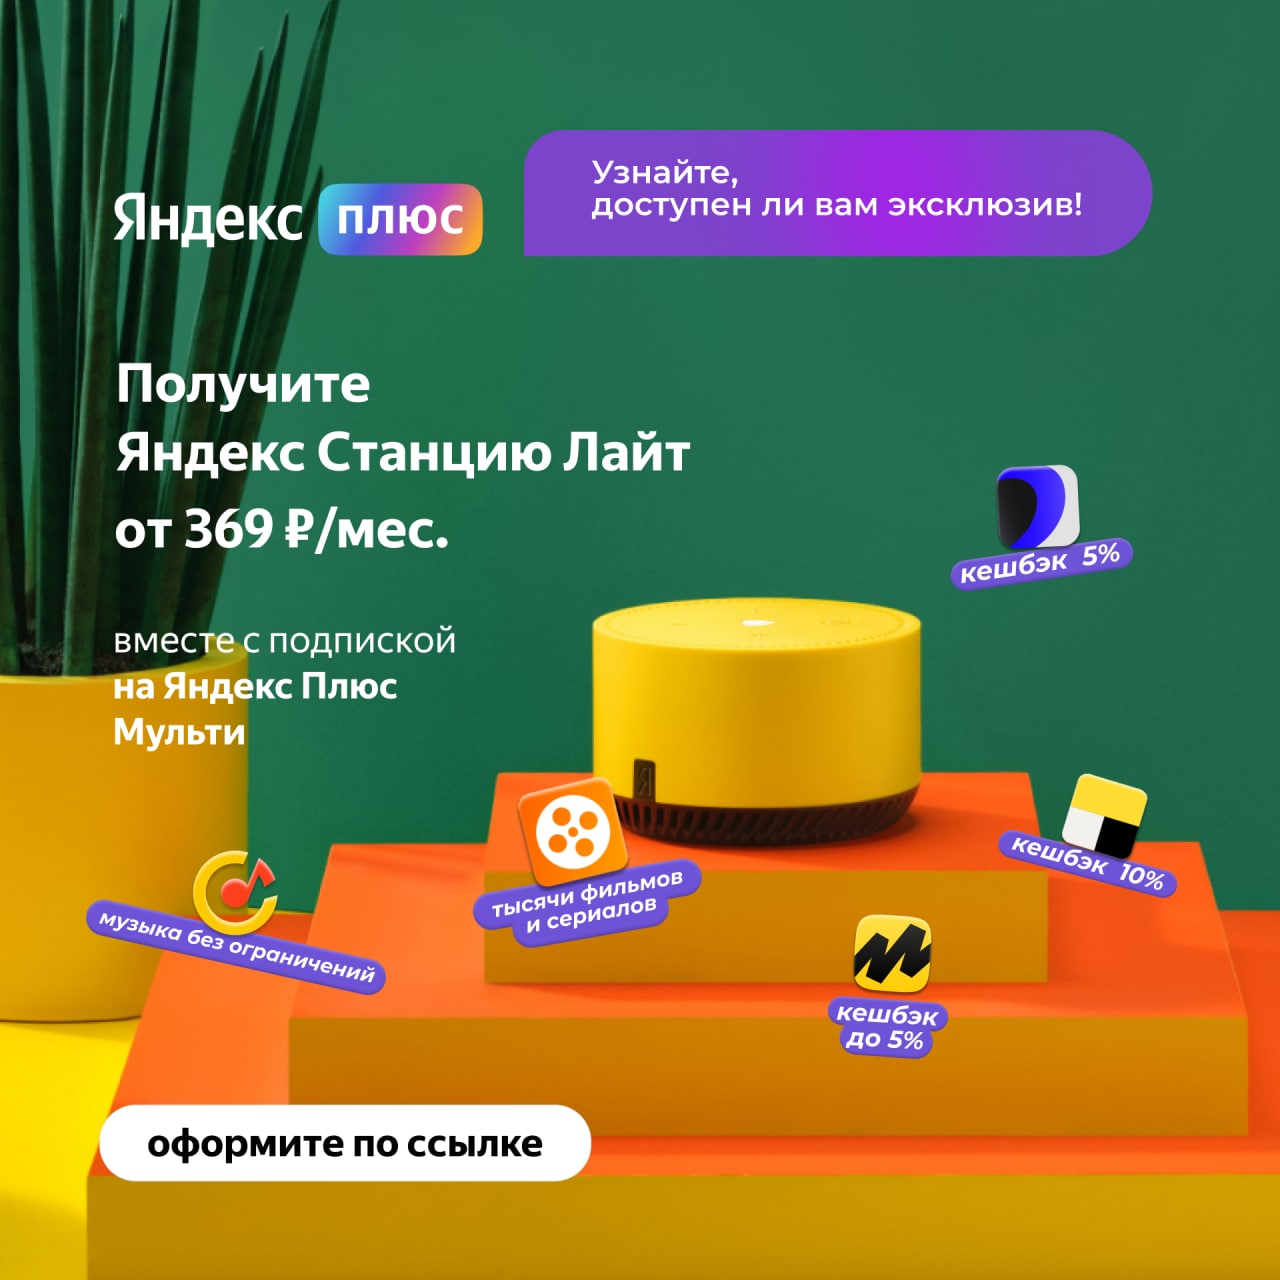 Яндекс плюс телеграмм подписка фото 84